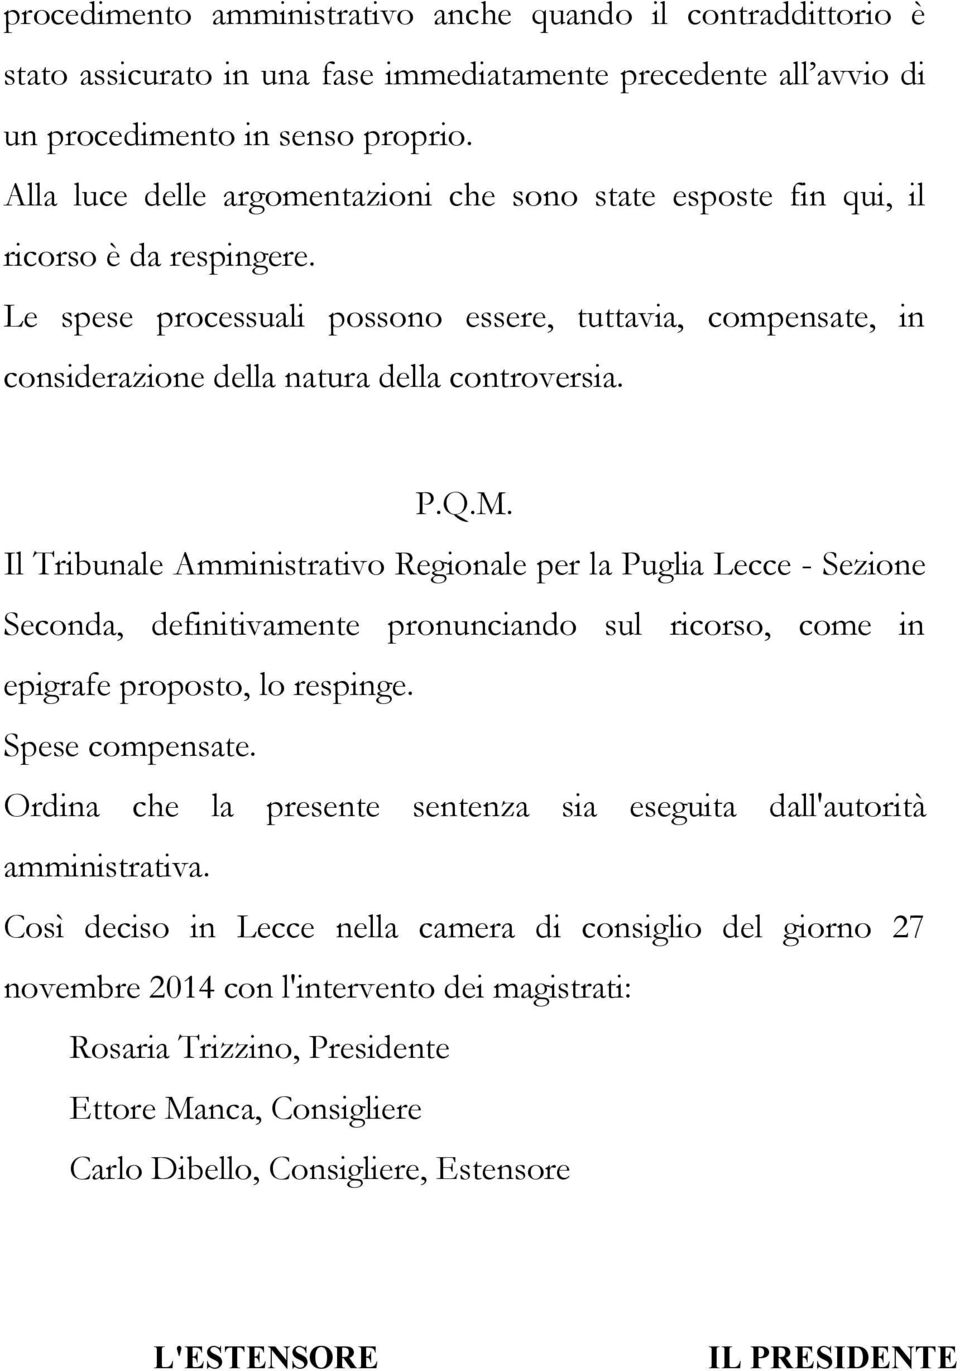 P.Q.M. Il Tribunale Amministrativo Regionale per la Puglia Lecce - Sezione Seconda, definitivamente pronunciando sul ricorso, come in epigrafe proposto, lo respinge. Spese compensate.